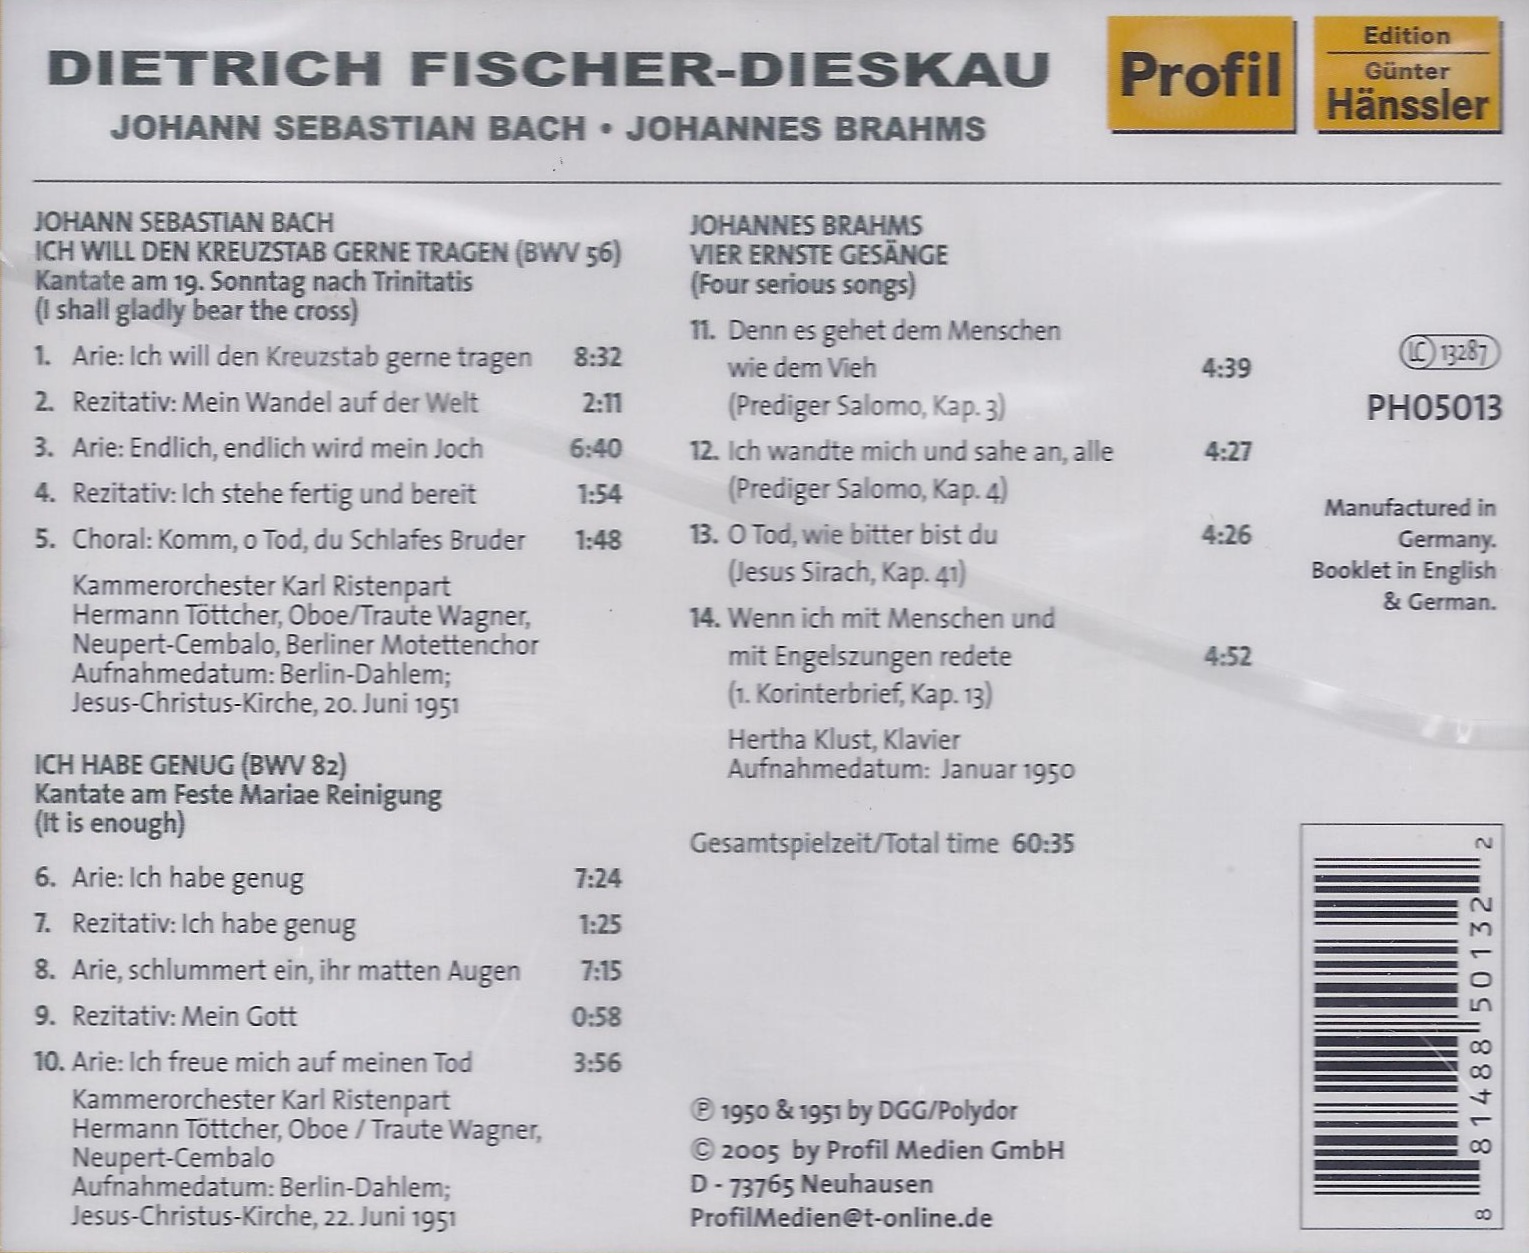 Dietrich Fischer-Dieskau - Bach and Brahms - slide-1